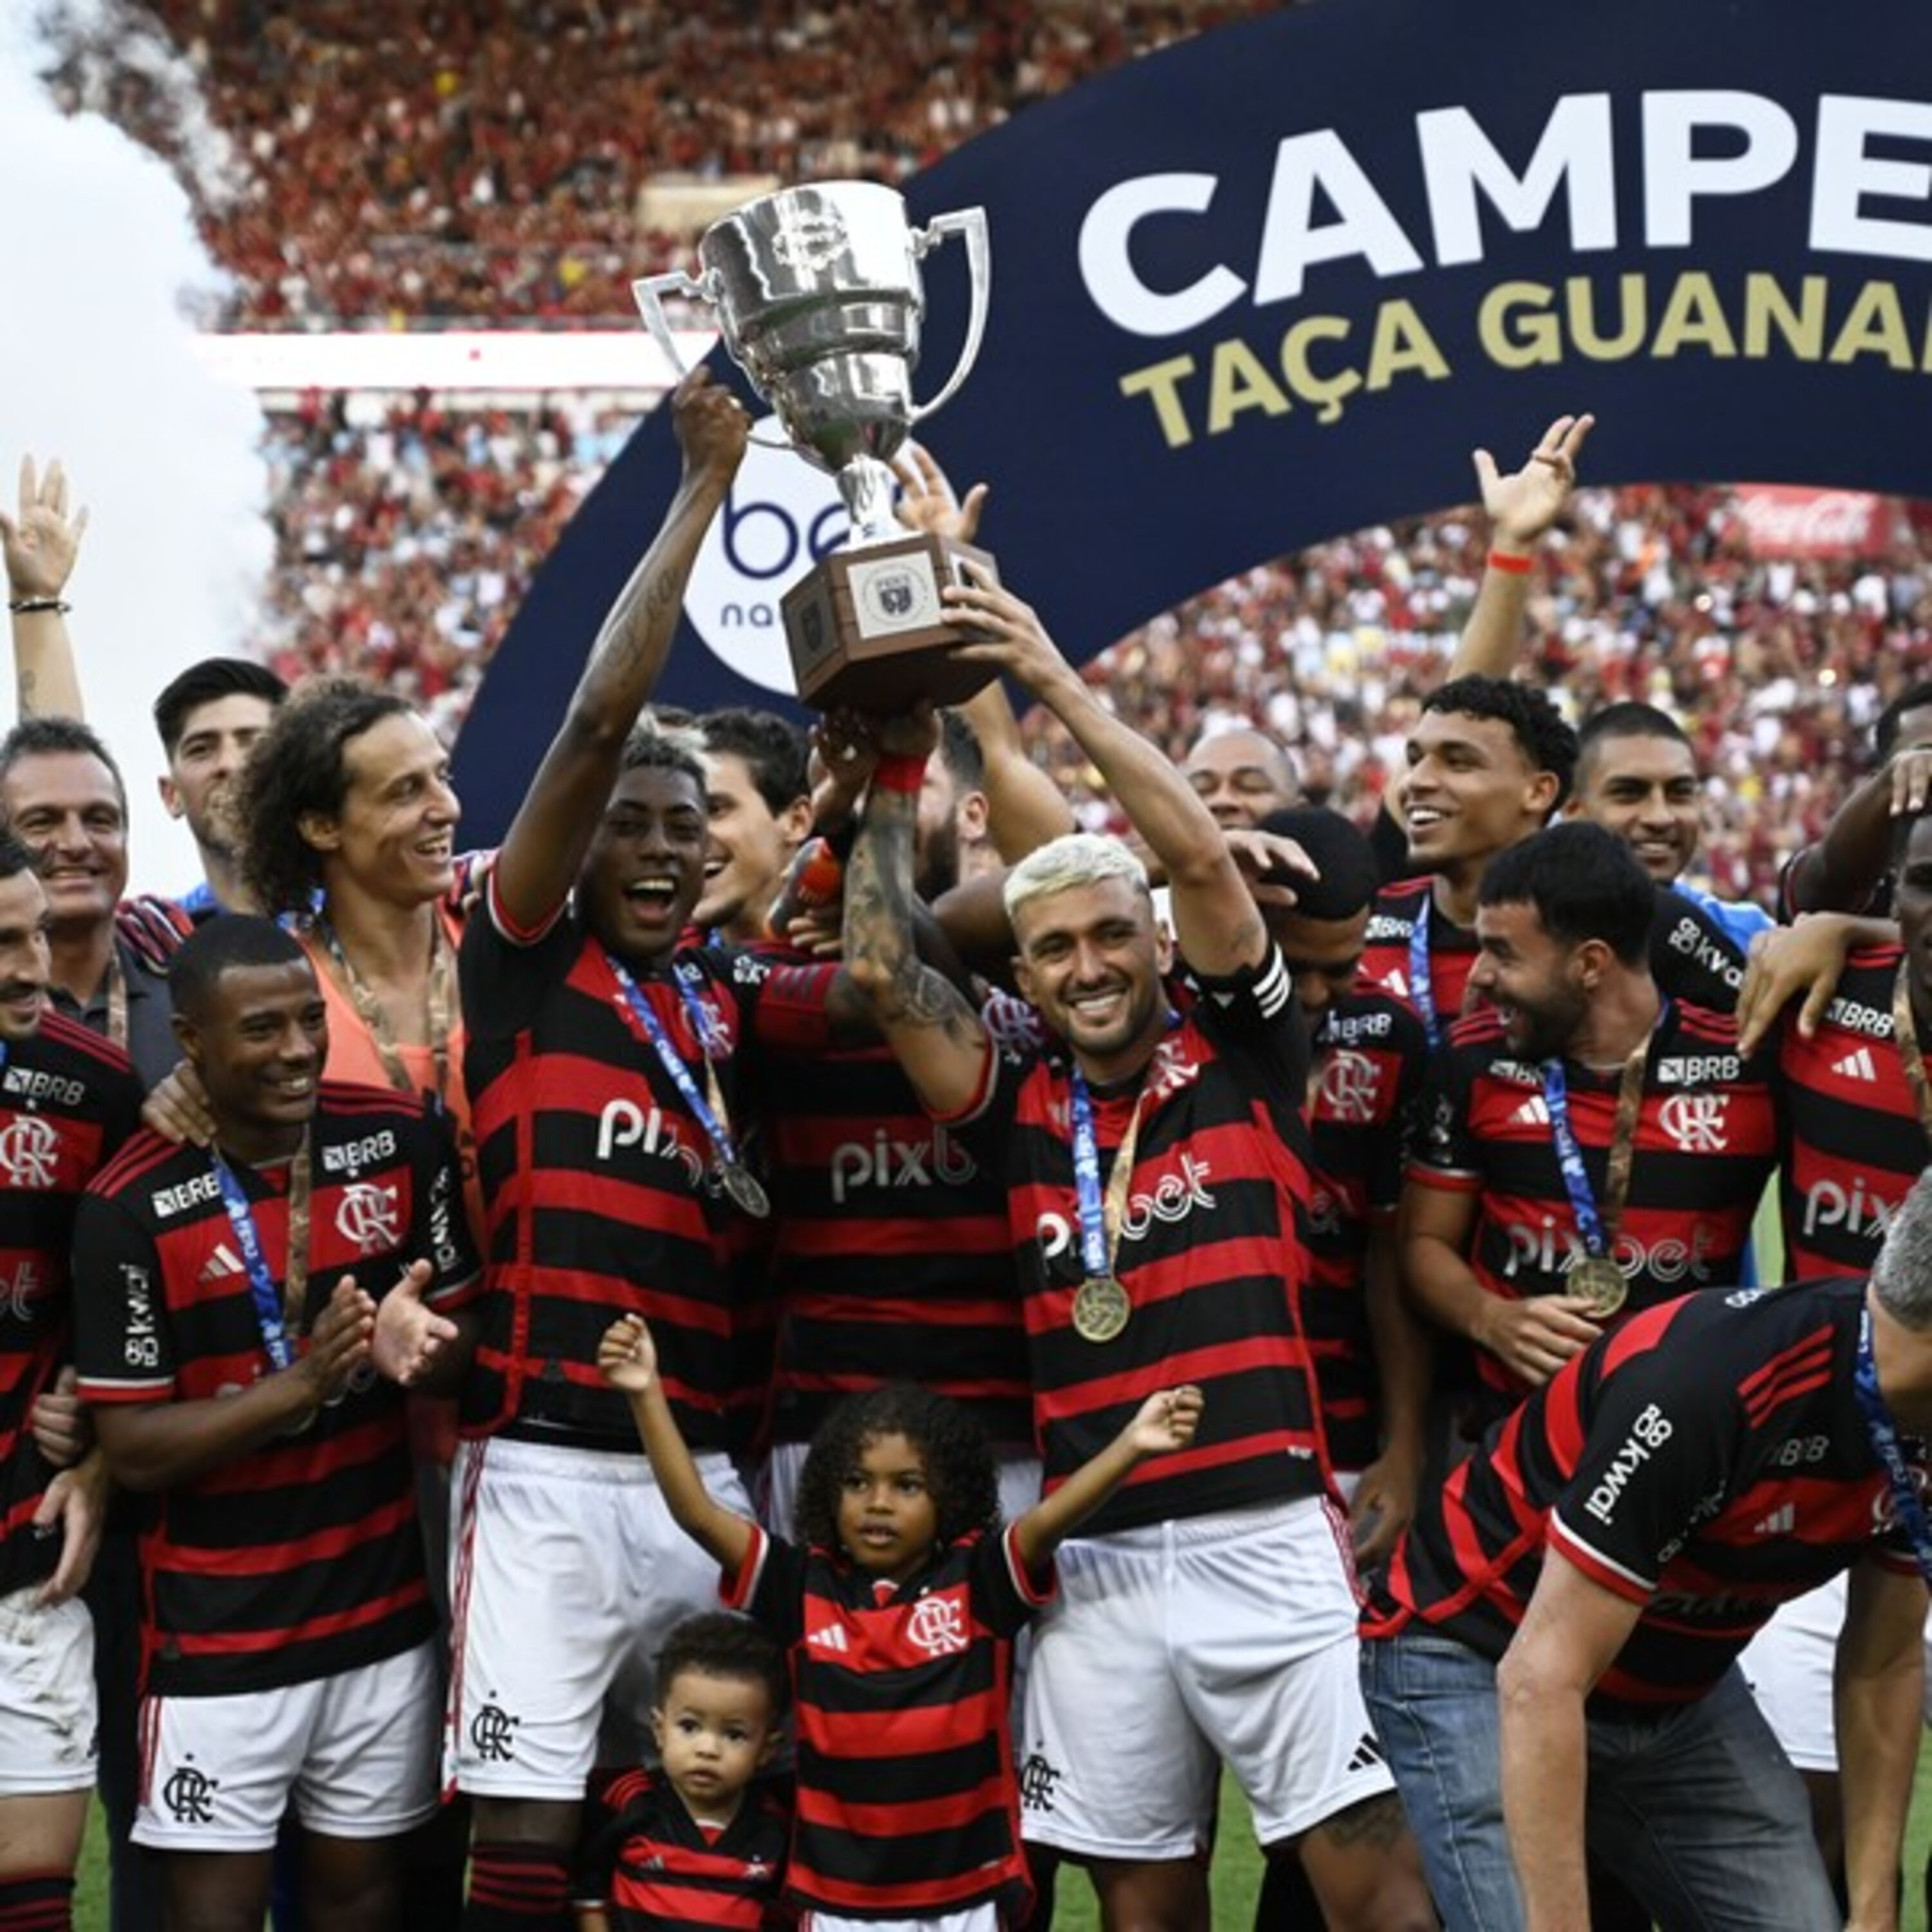 GE Flamengo #400 - O balanço da Taça Guanabara em edição especial